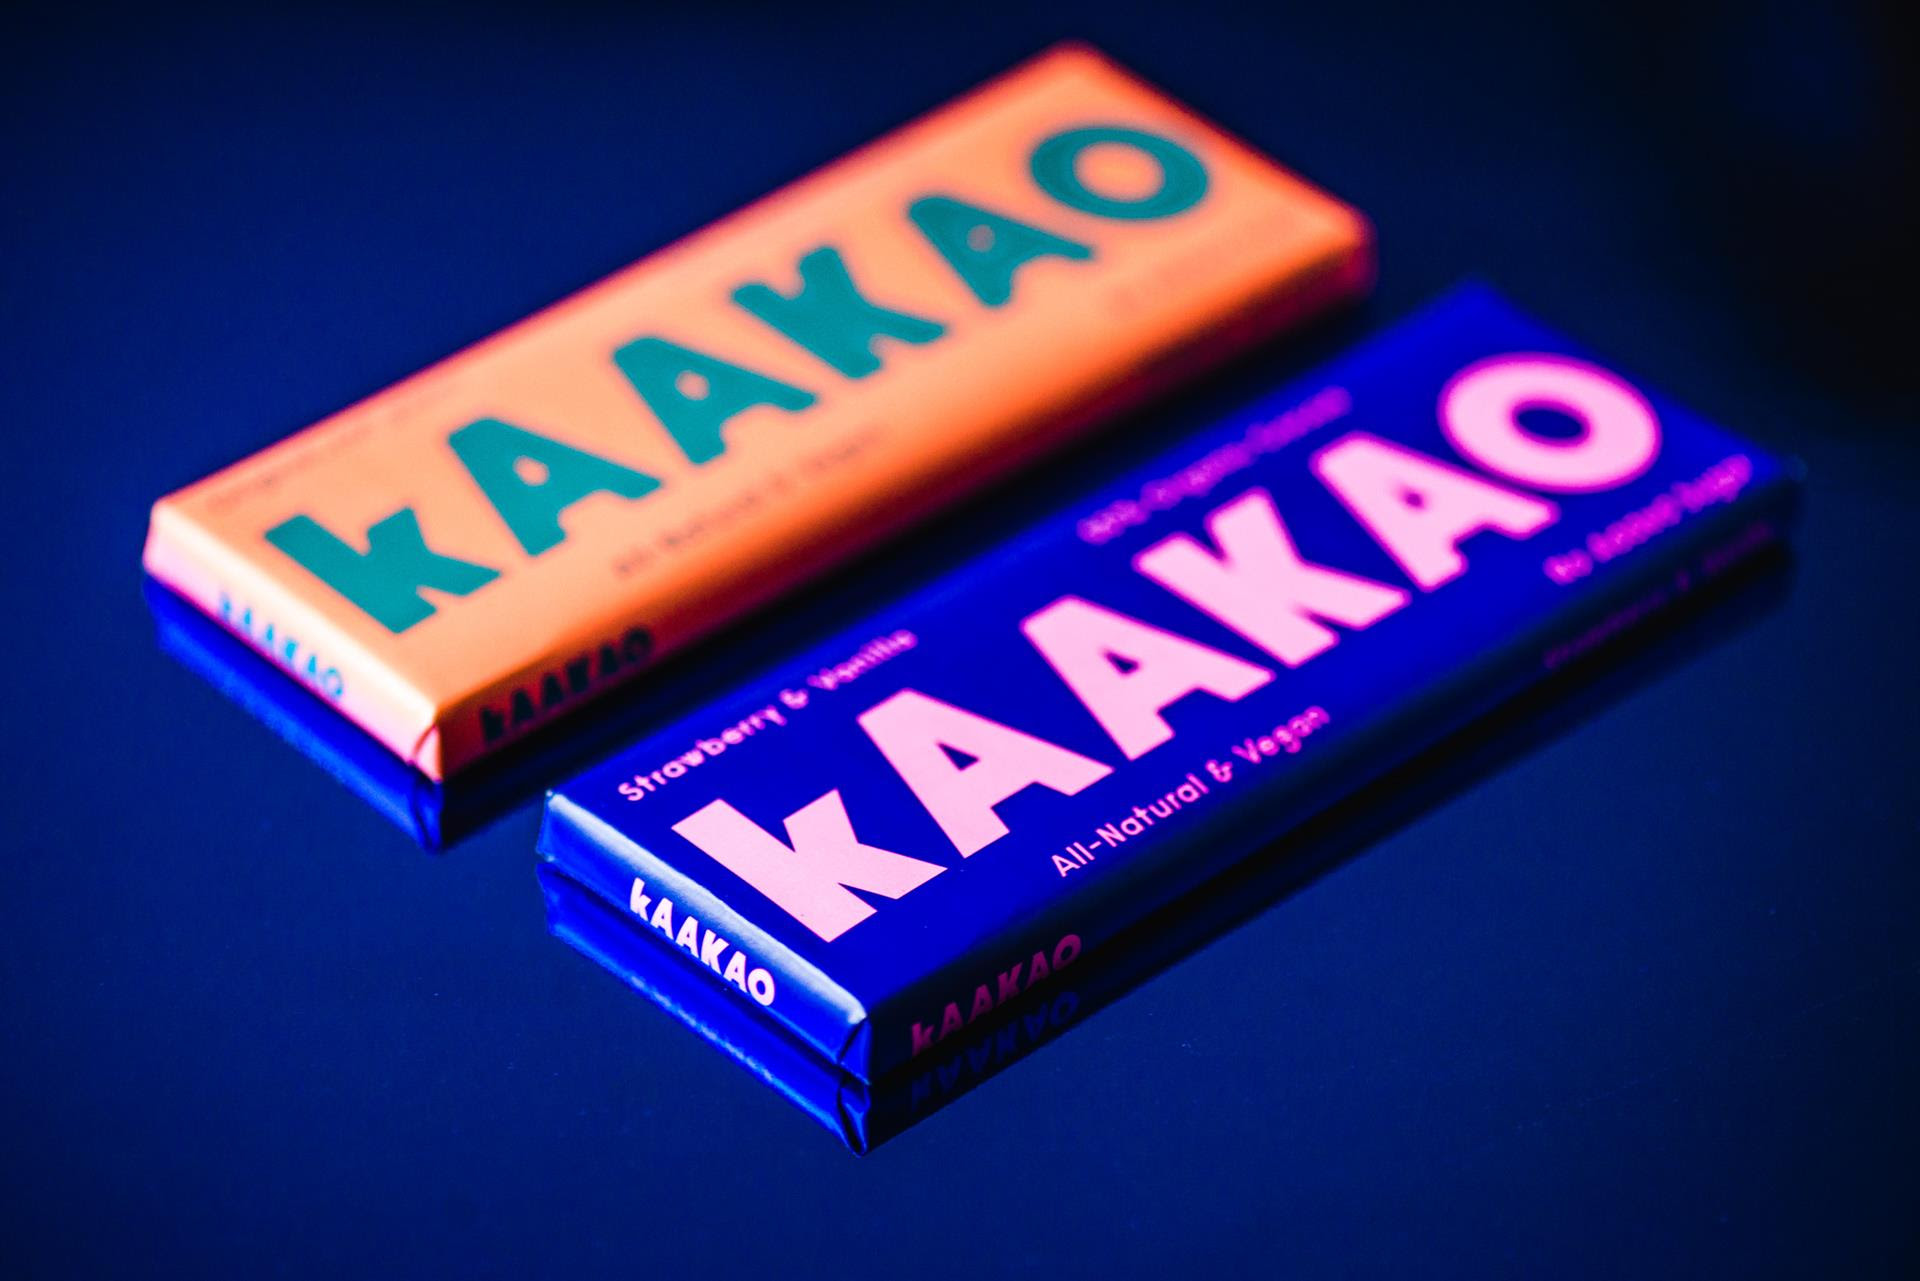 Chocolatier kAAKAO Finds EU Regulations More Bitter Than Sweet